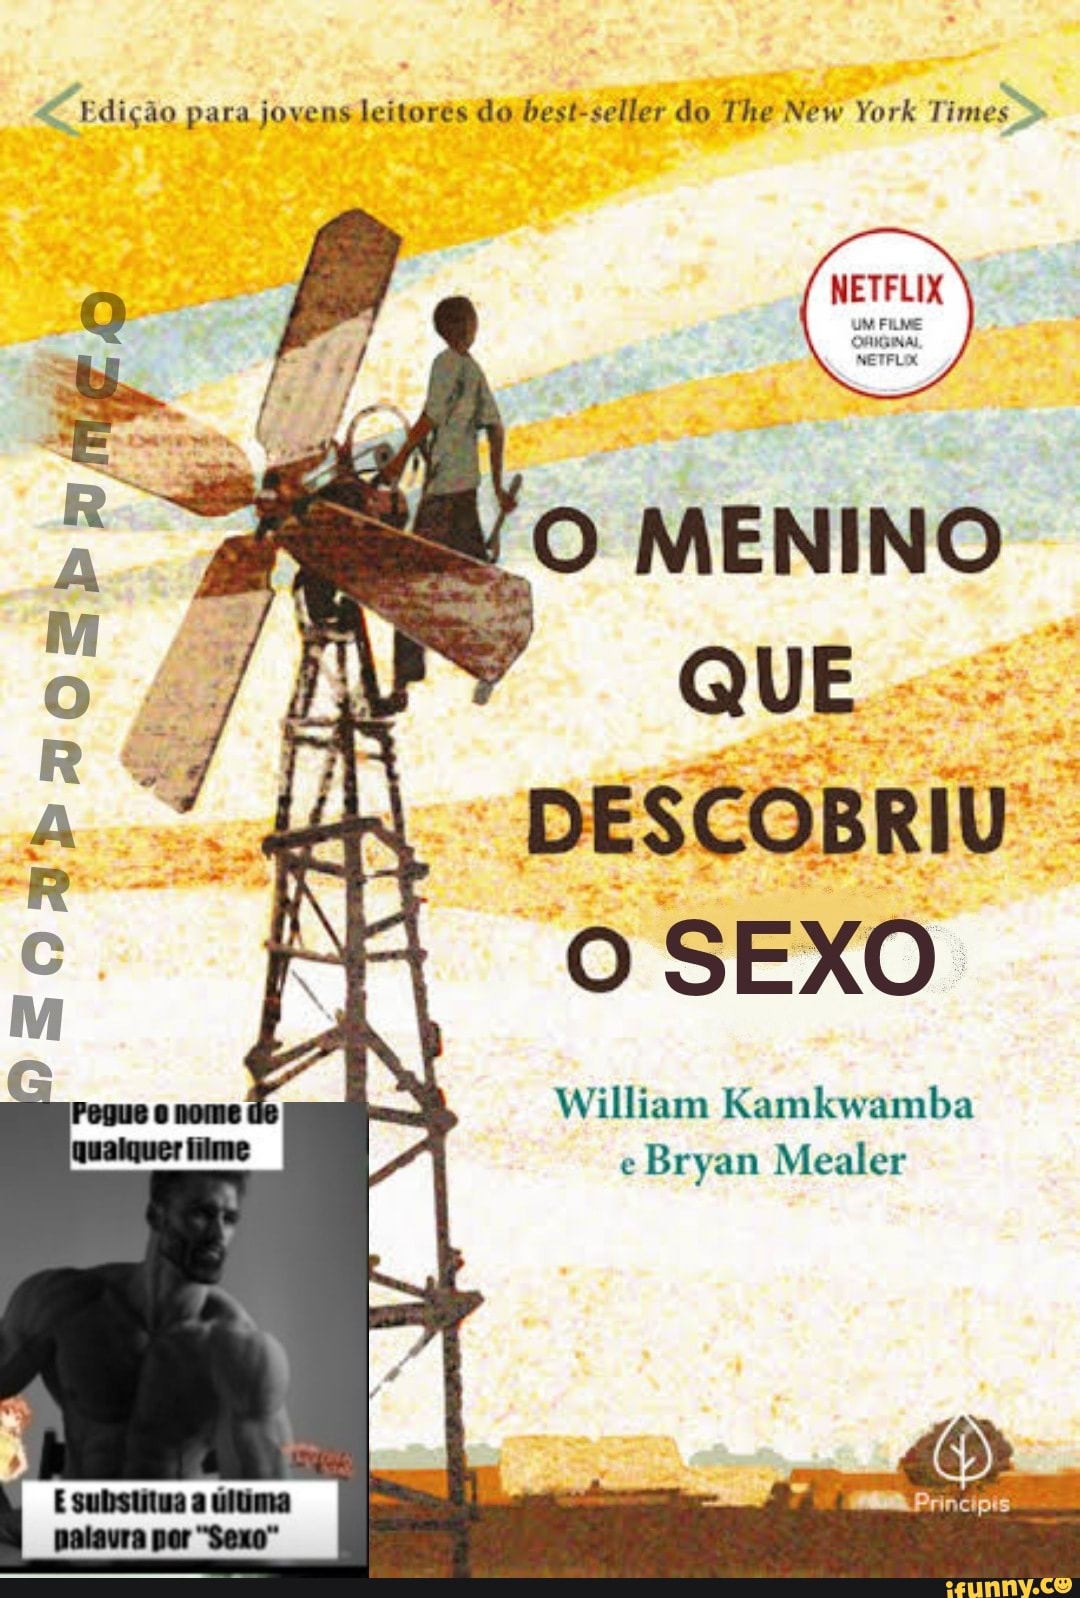 William Kamkwamba – Wikipédia, a enciclopédia livre